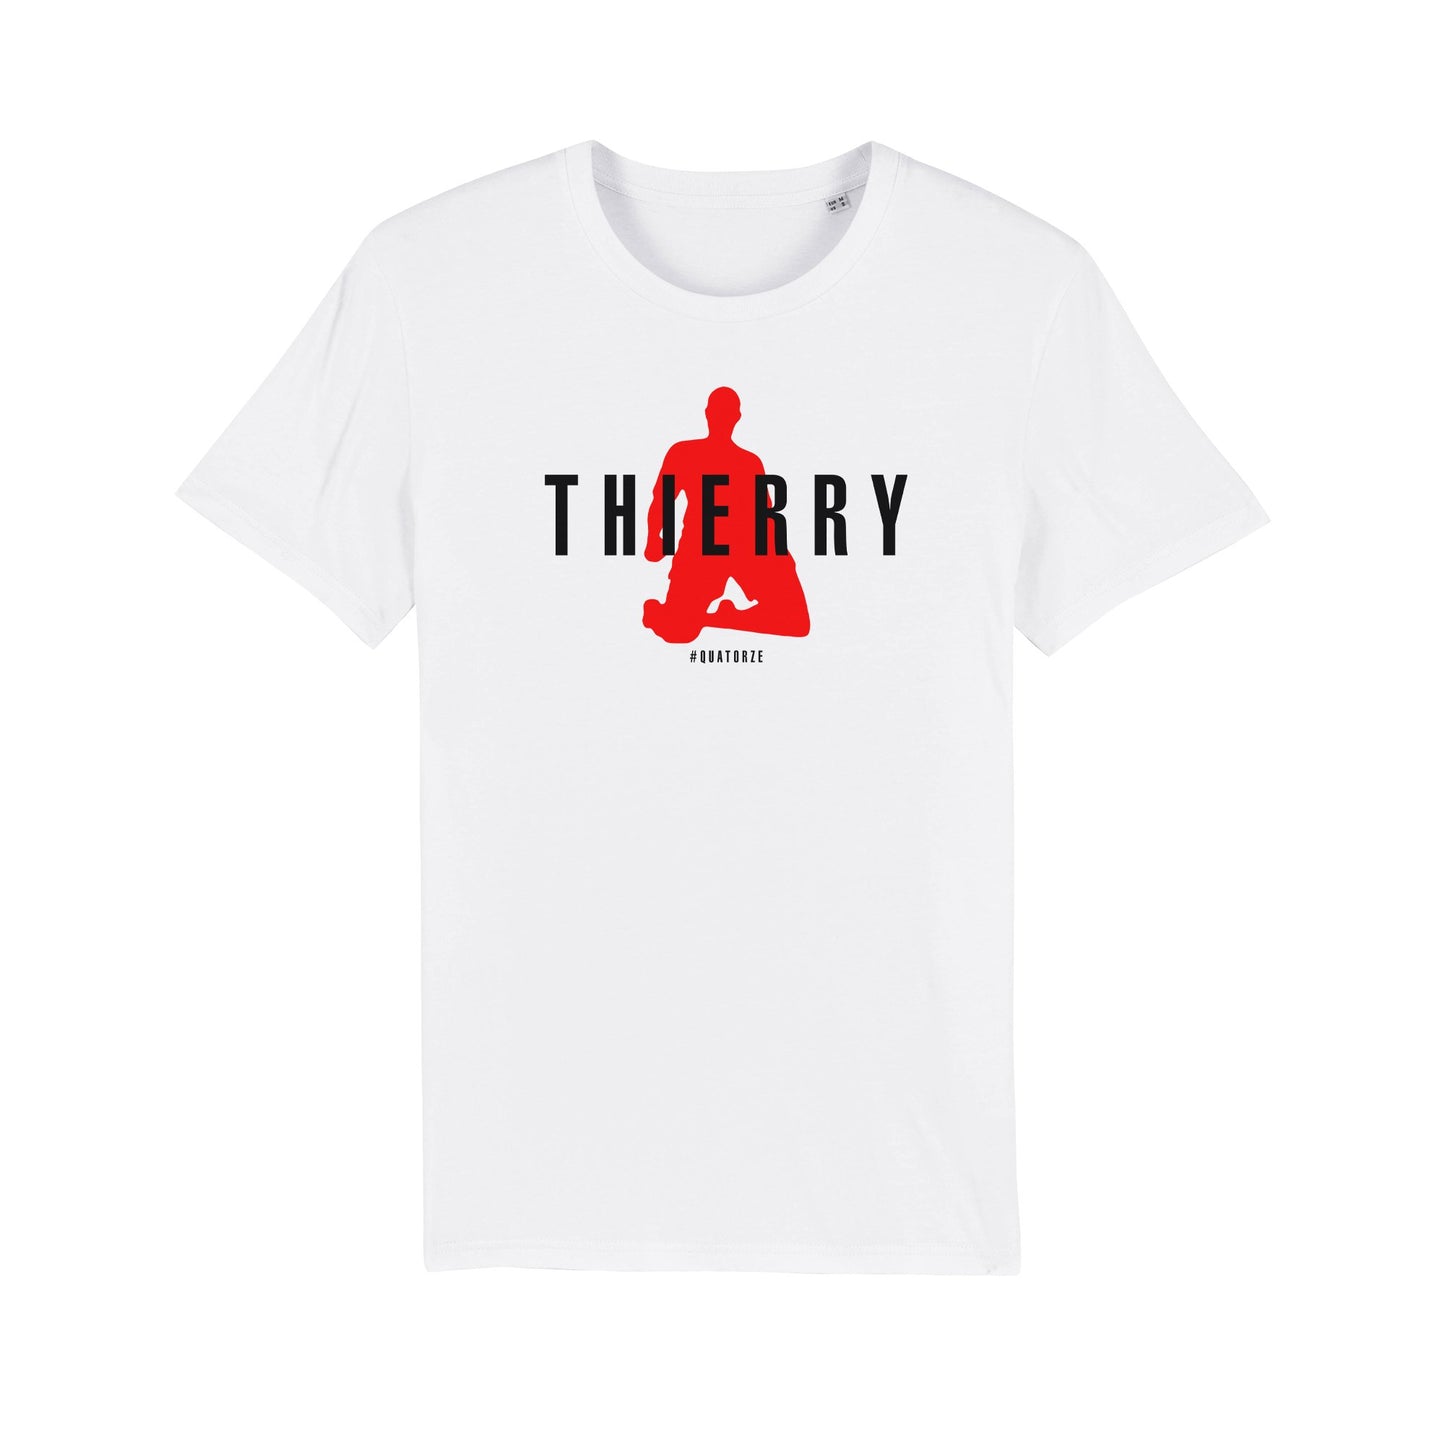 Thierry #Quatorze Tee